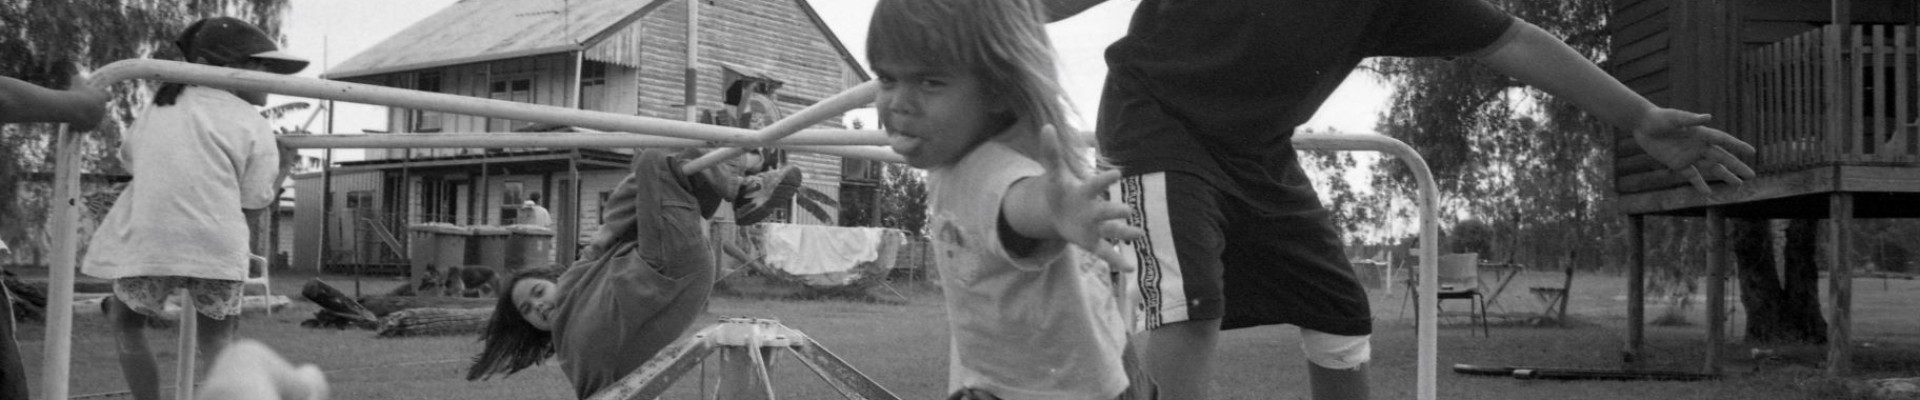 Jo-Anne Driessens-1998-Children Play on a merry-go-round